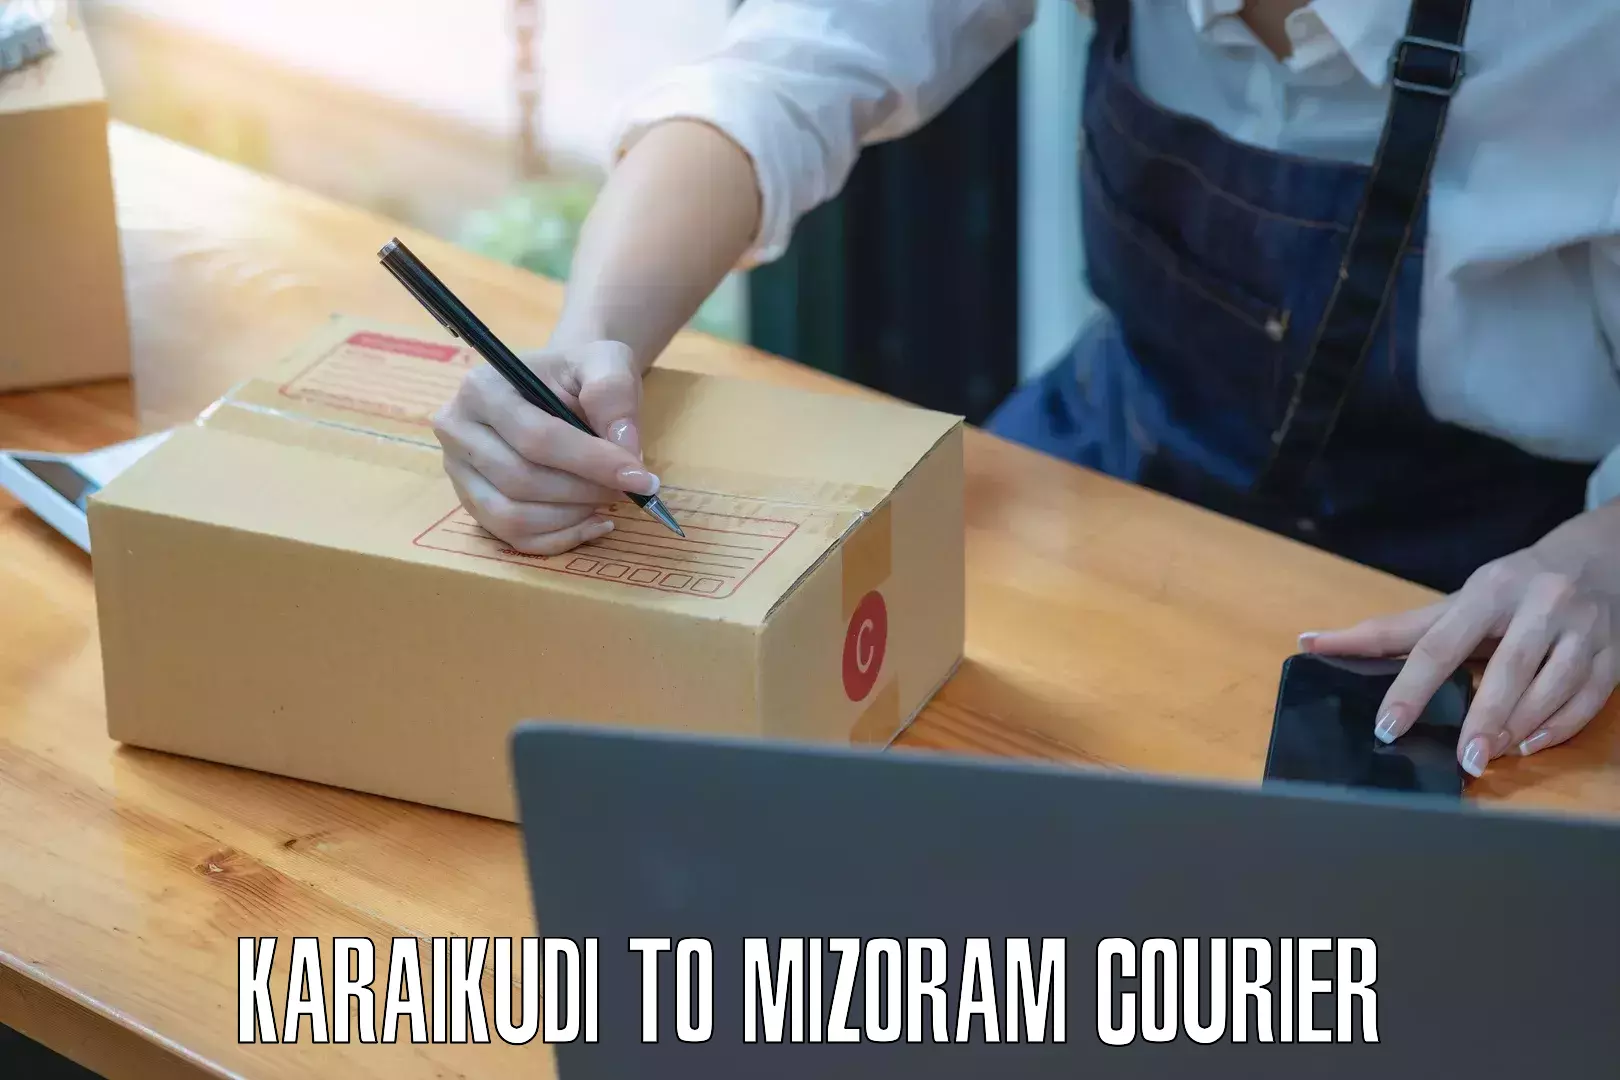 Efficient parcel tracking Karaikudi to Aizawl